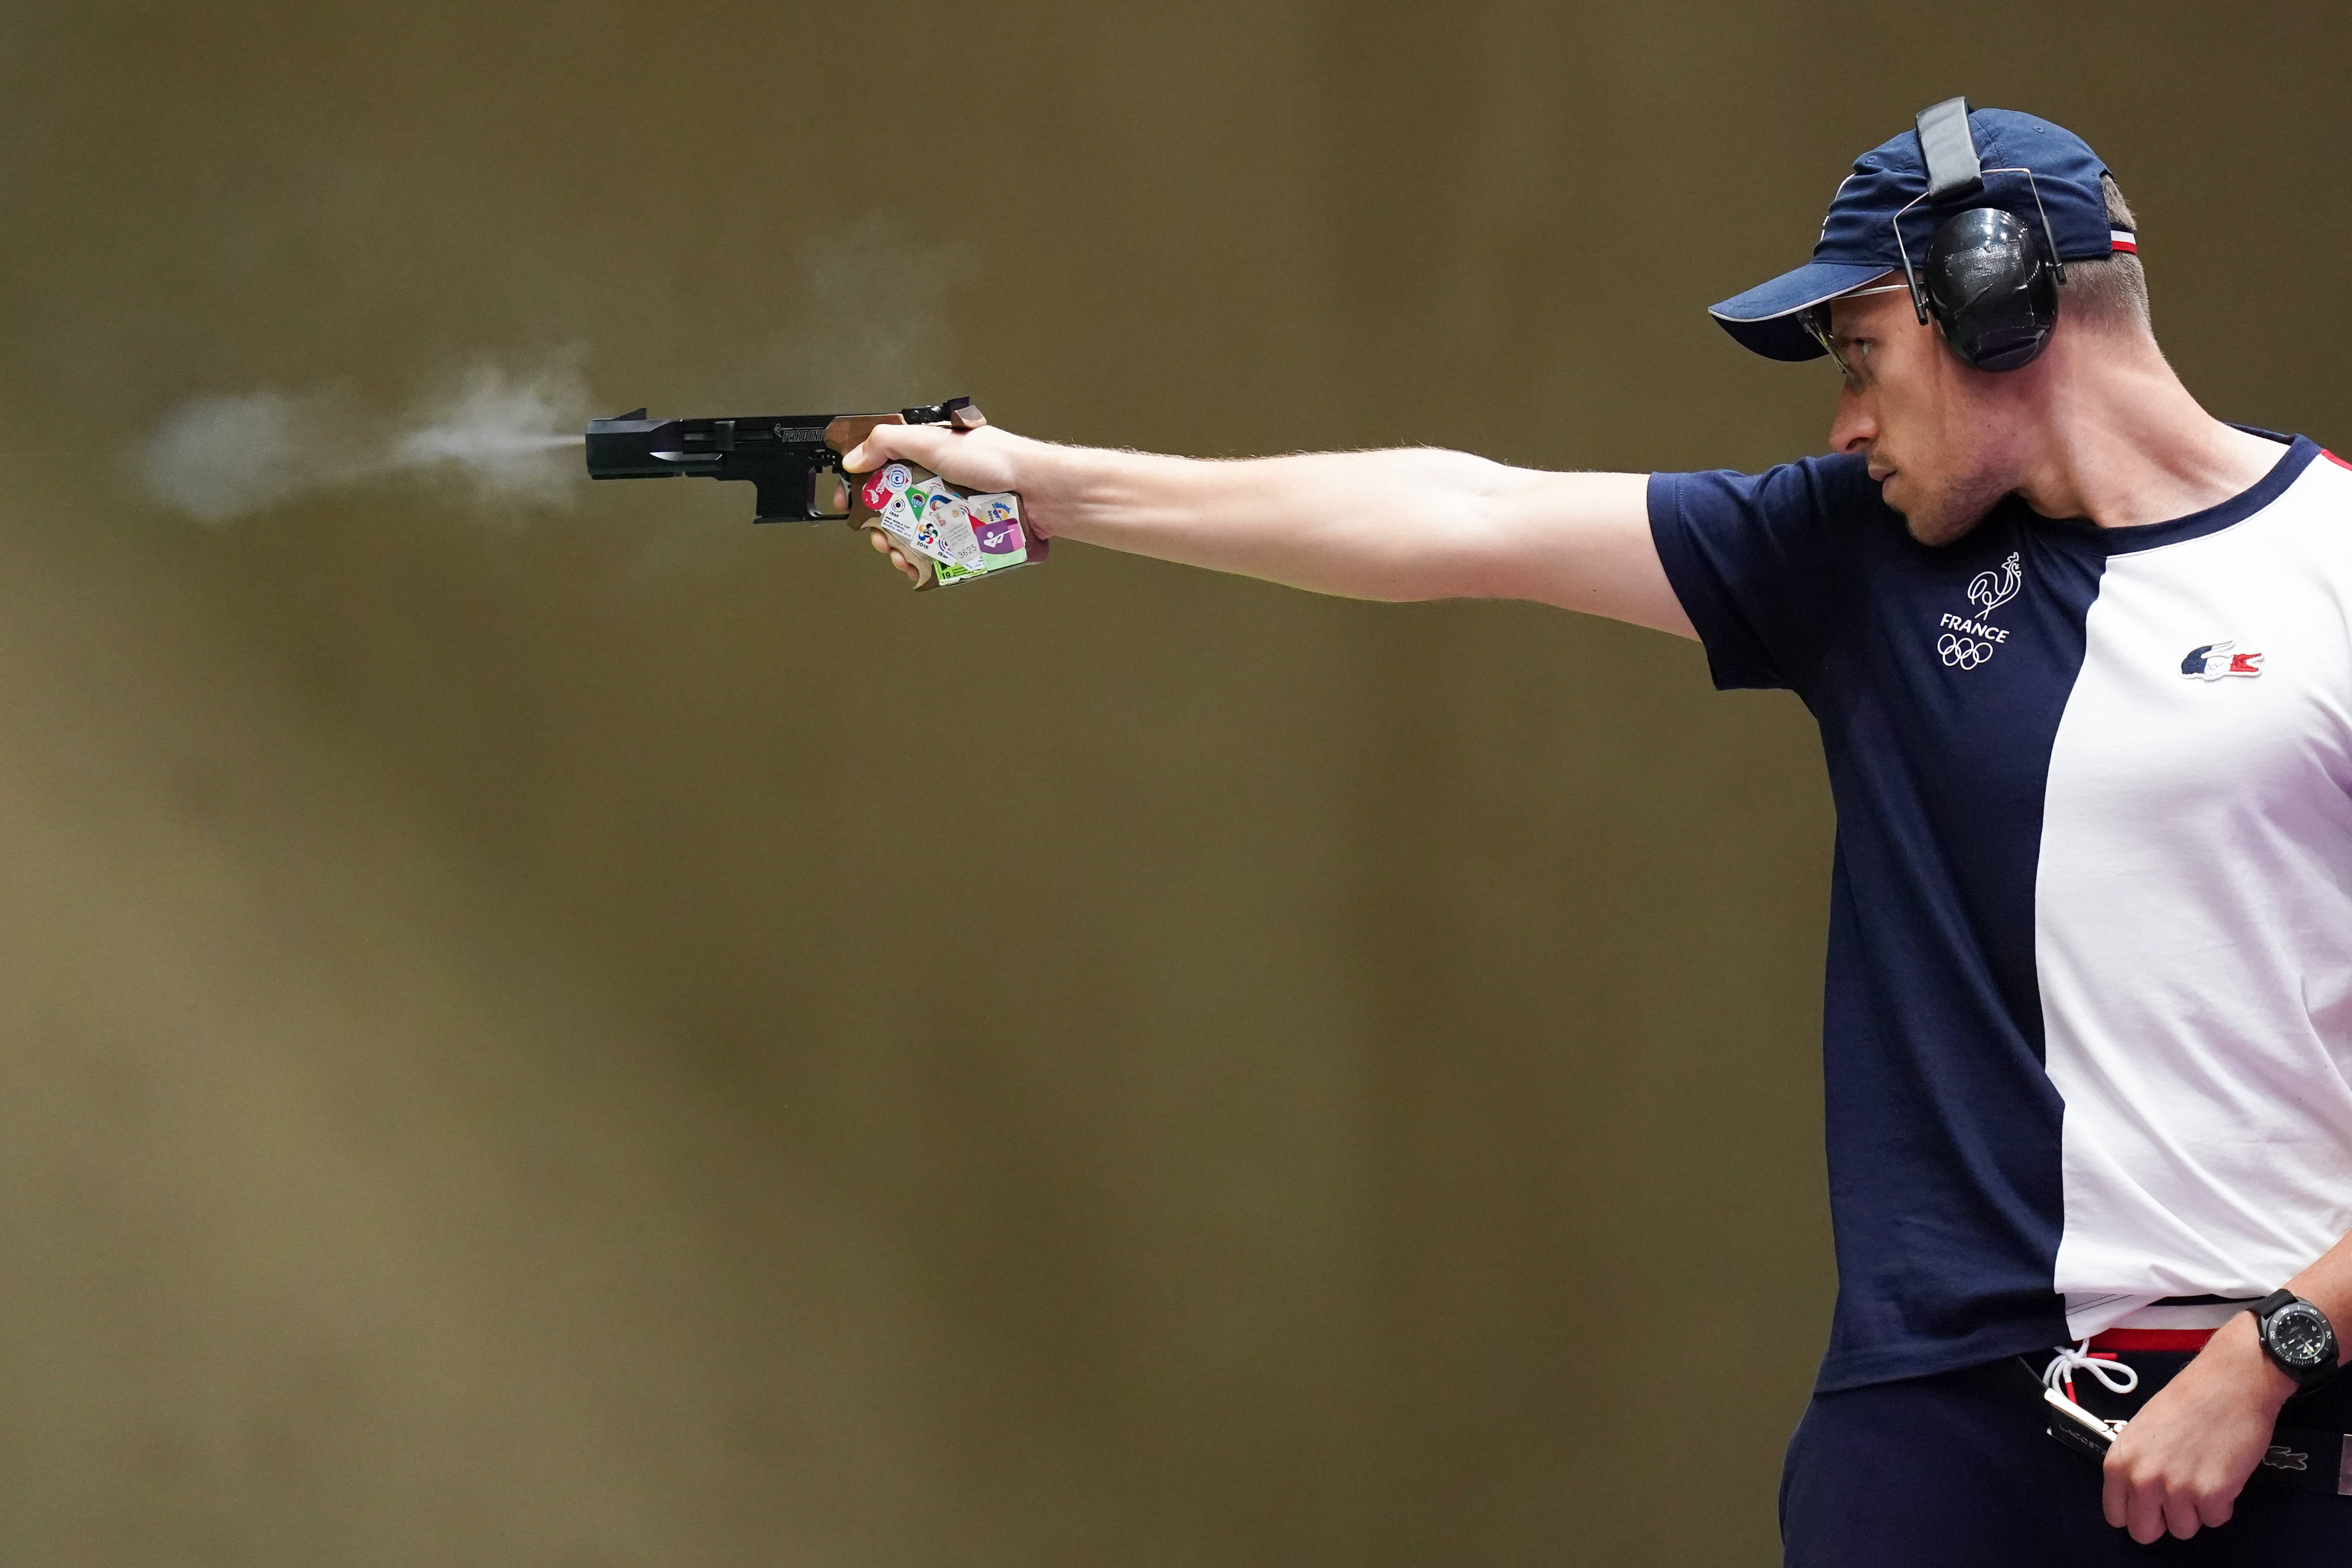 奥运会射击比赛用枪图片